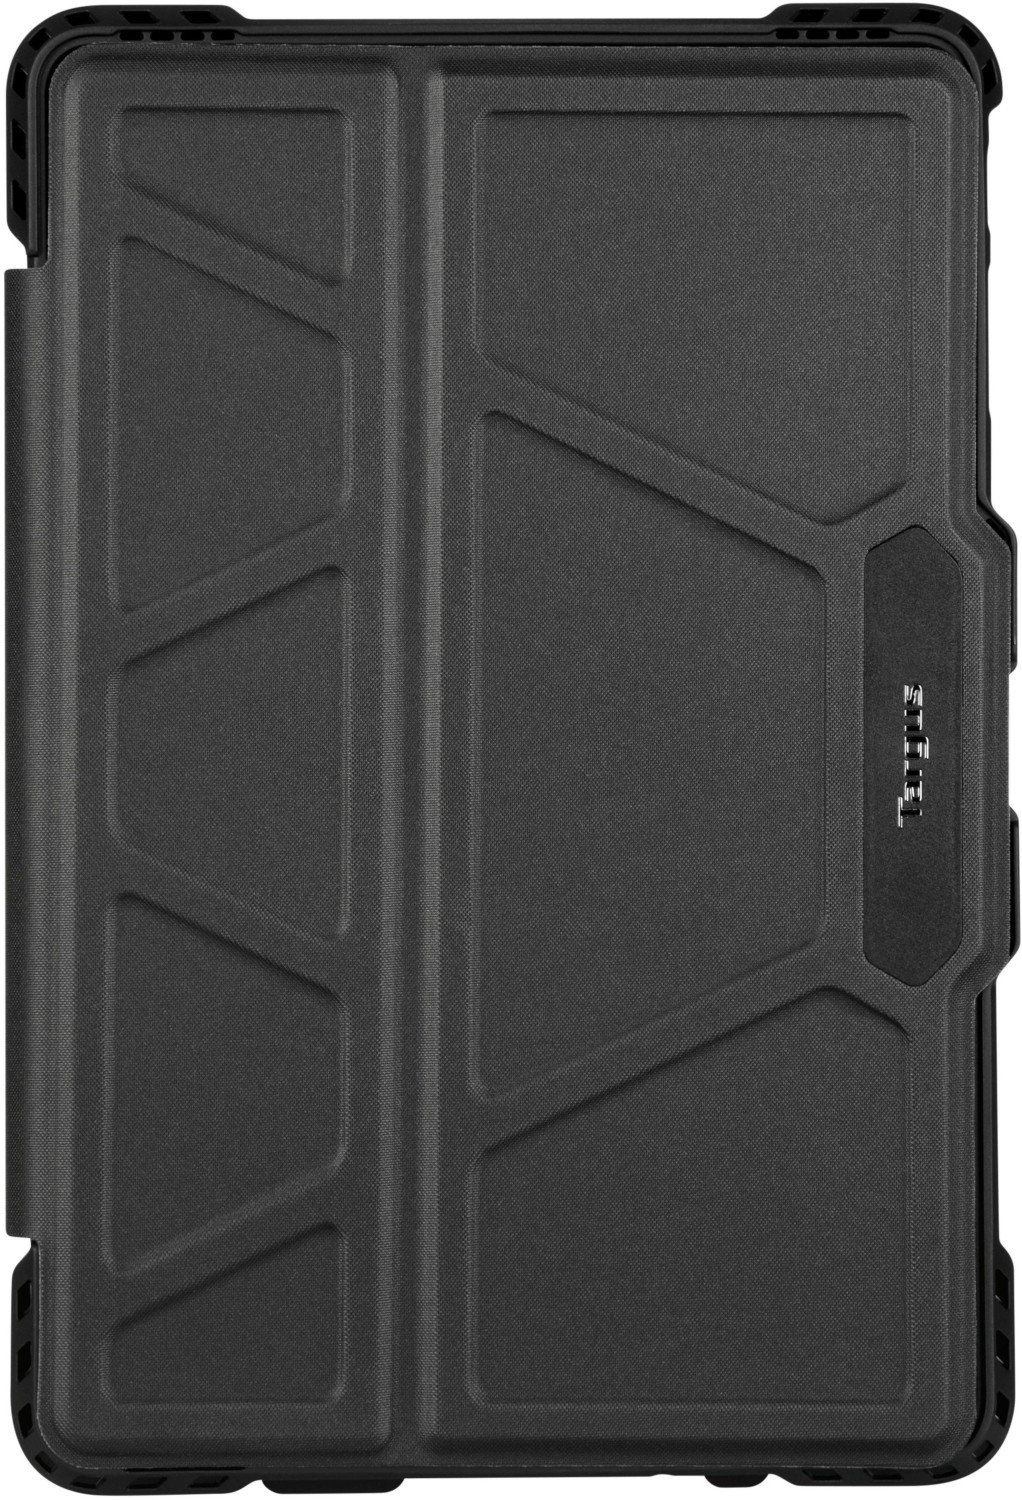 Photos - Tablet Case Targus Pro-Tek Galaxy Tab S4 black 